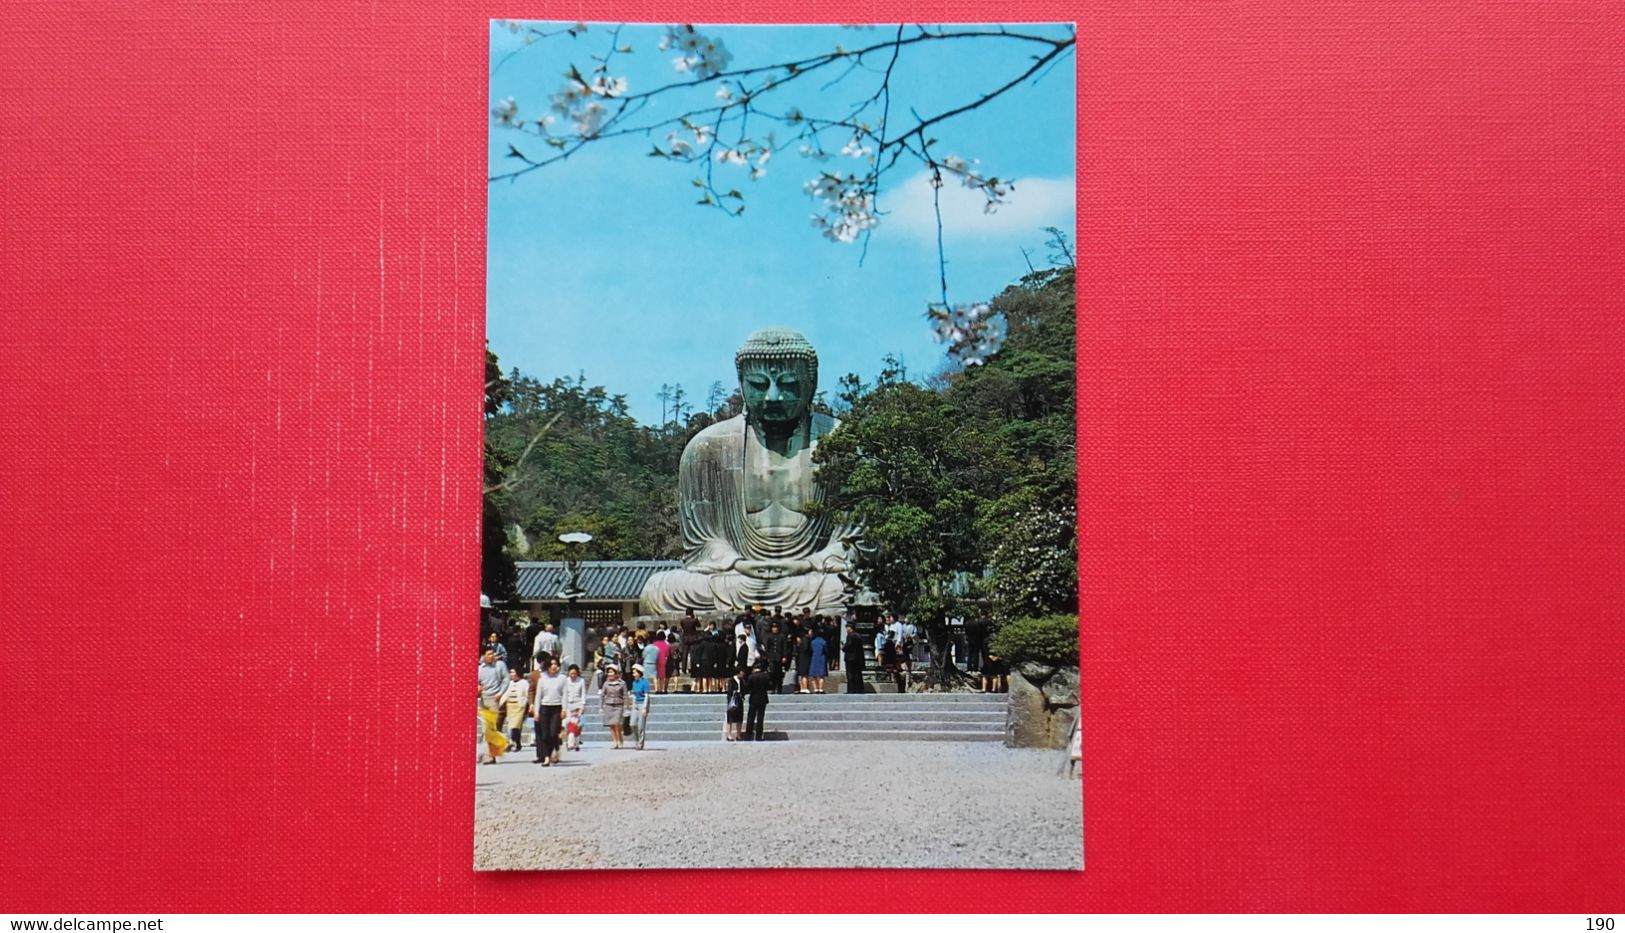 The Budda Of Kamakura - Buddismo